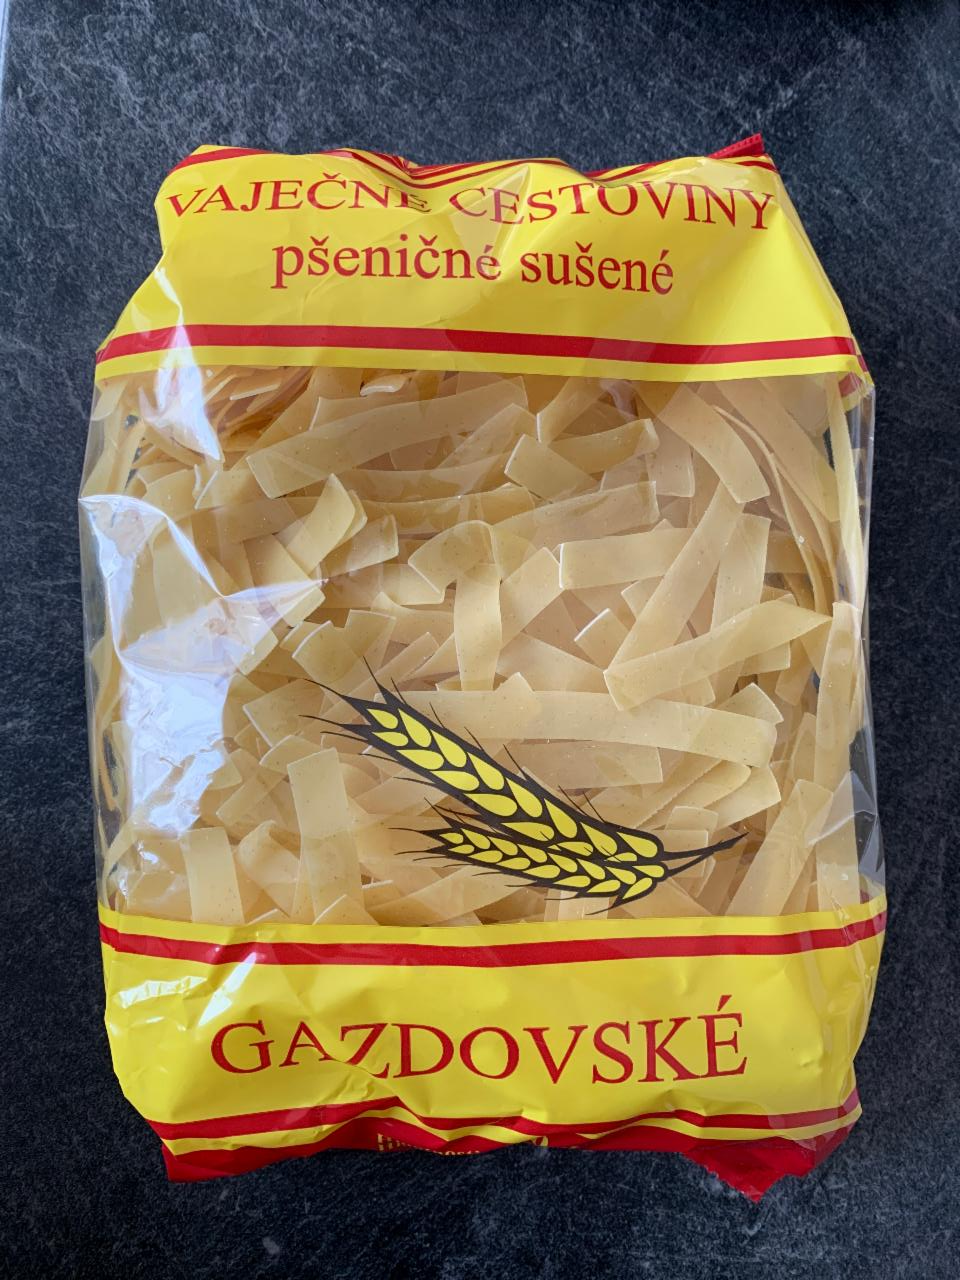 Fotografie - Vaječné cestoviny pšeničné sušené Gazdovské Komako